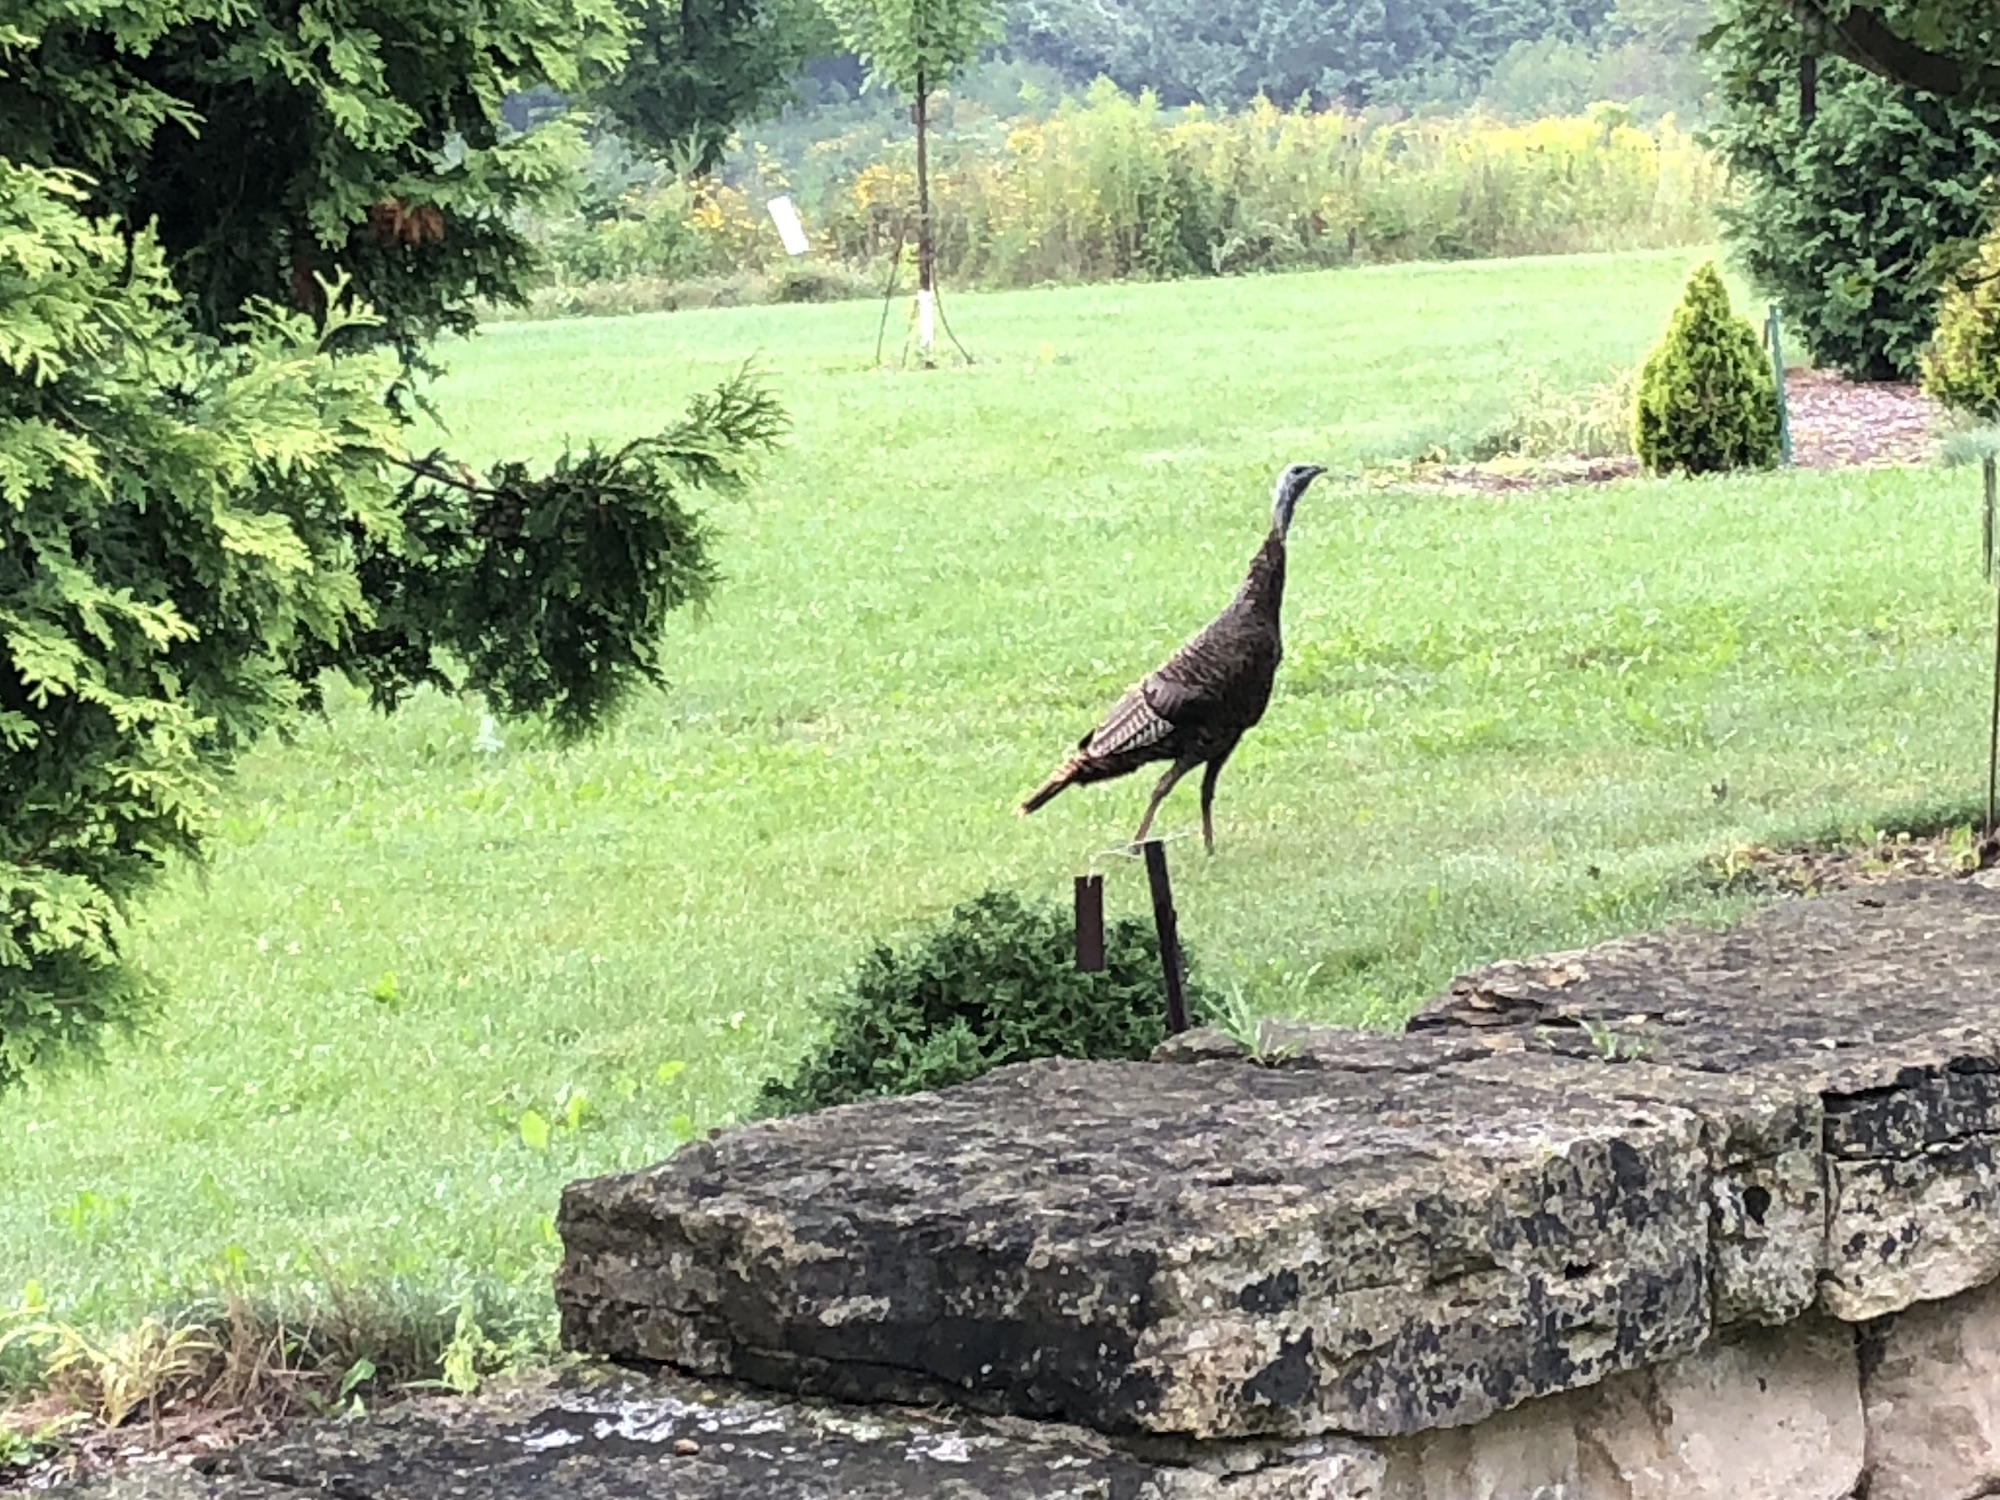 Wild Turkeys near Stevens Pond retention pond in Madison, Wisconsin on August 19, 2018.